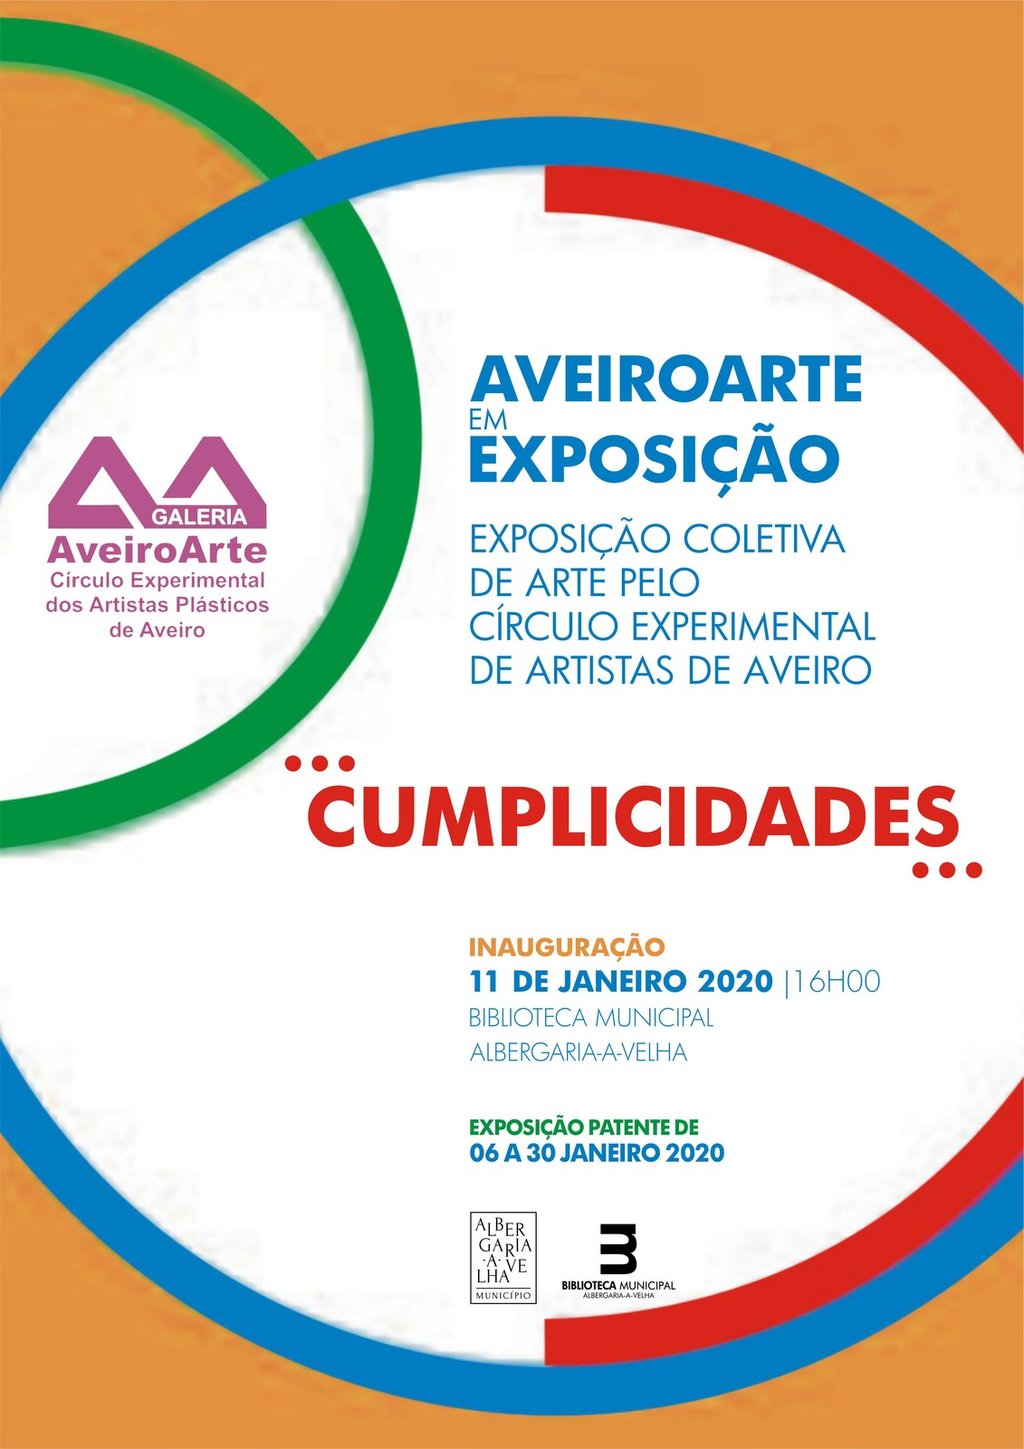 AveiroArte evoca cumplicidades entre artistas em Albergaria-a-Velha